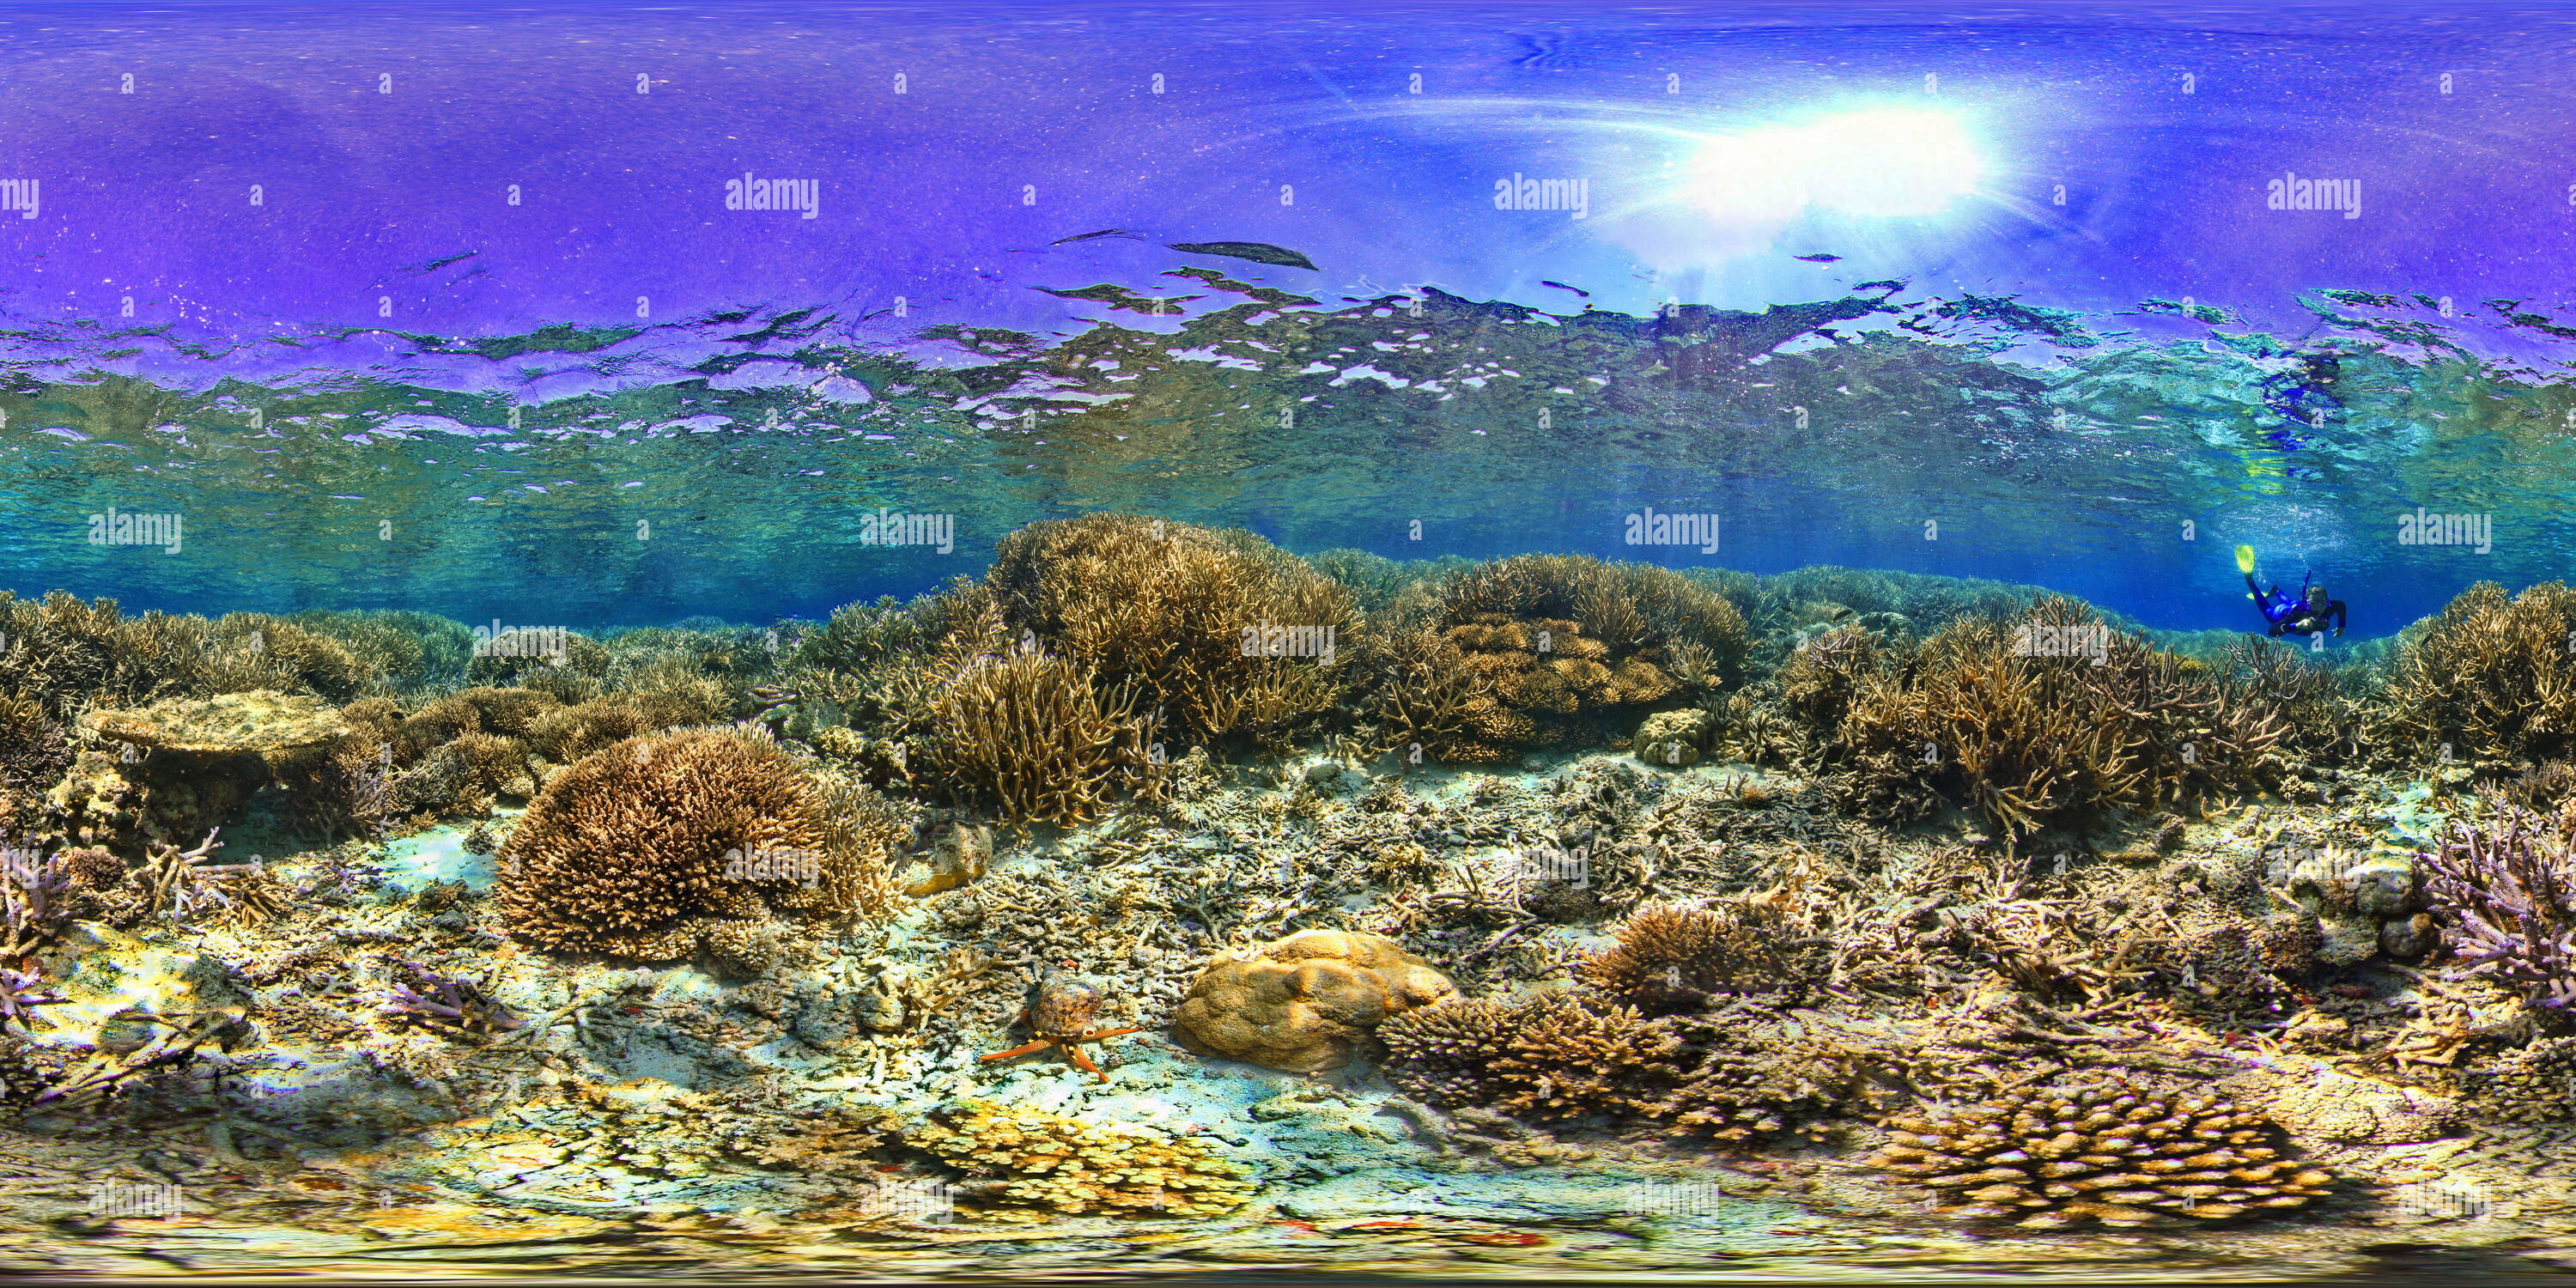 360 degree panoramic view of Triton eating starfish New Caledonia